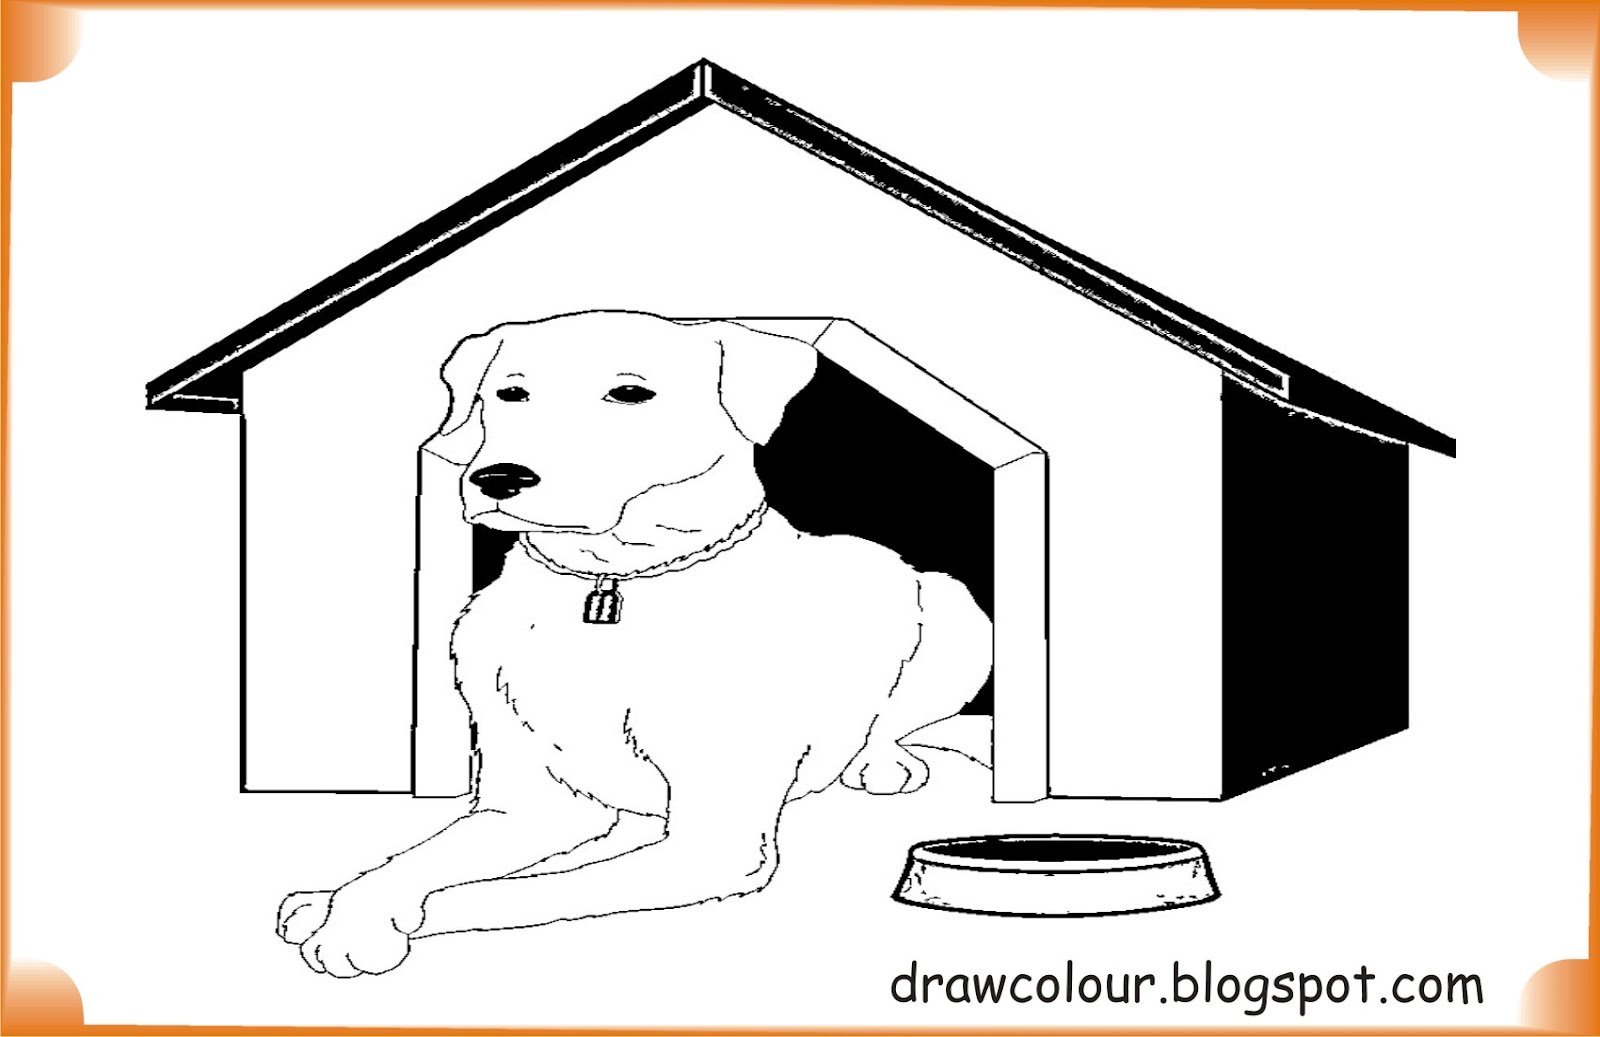 Жилище собаки картинки для детей. Dogs House Coloring. Dog in the House Clipart черно-белая. Рисунок на конкурс хвостик дог Хаус для детей.